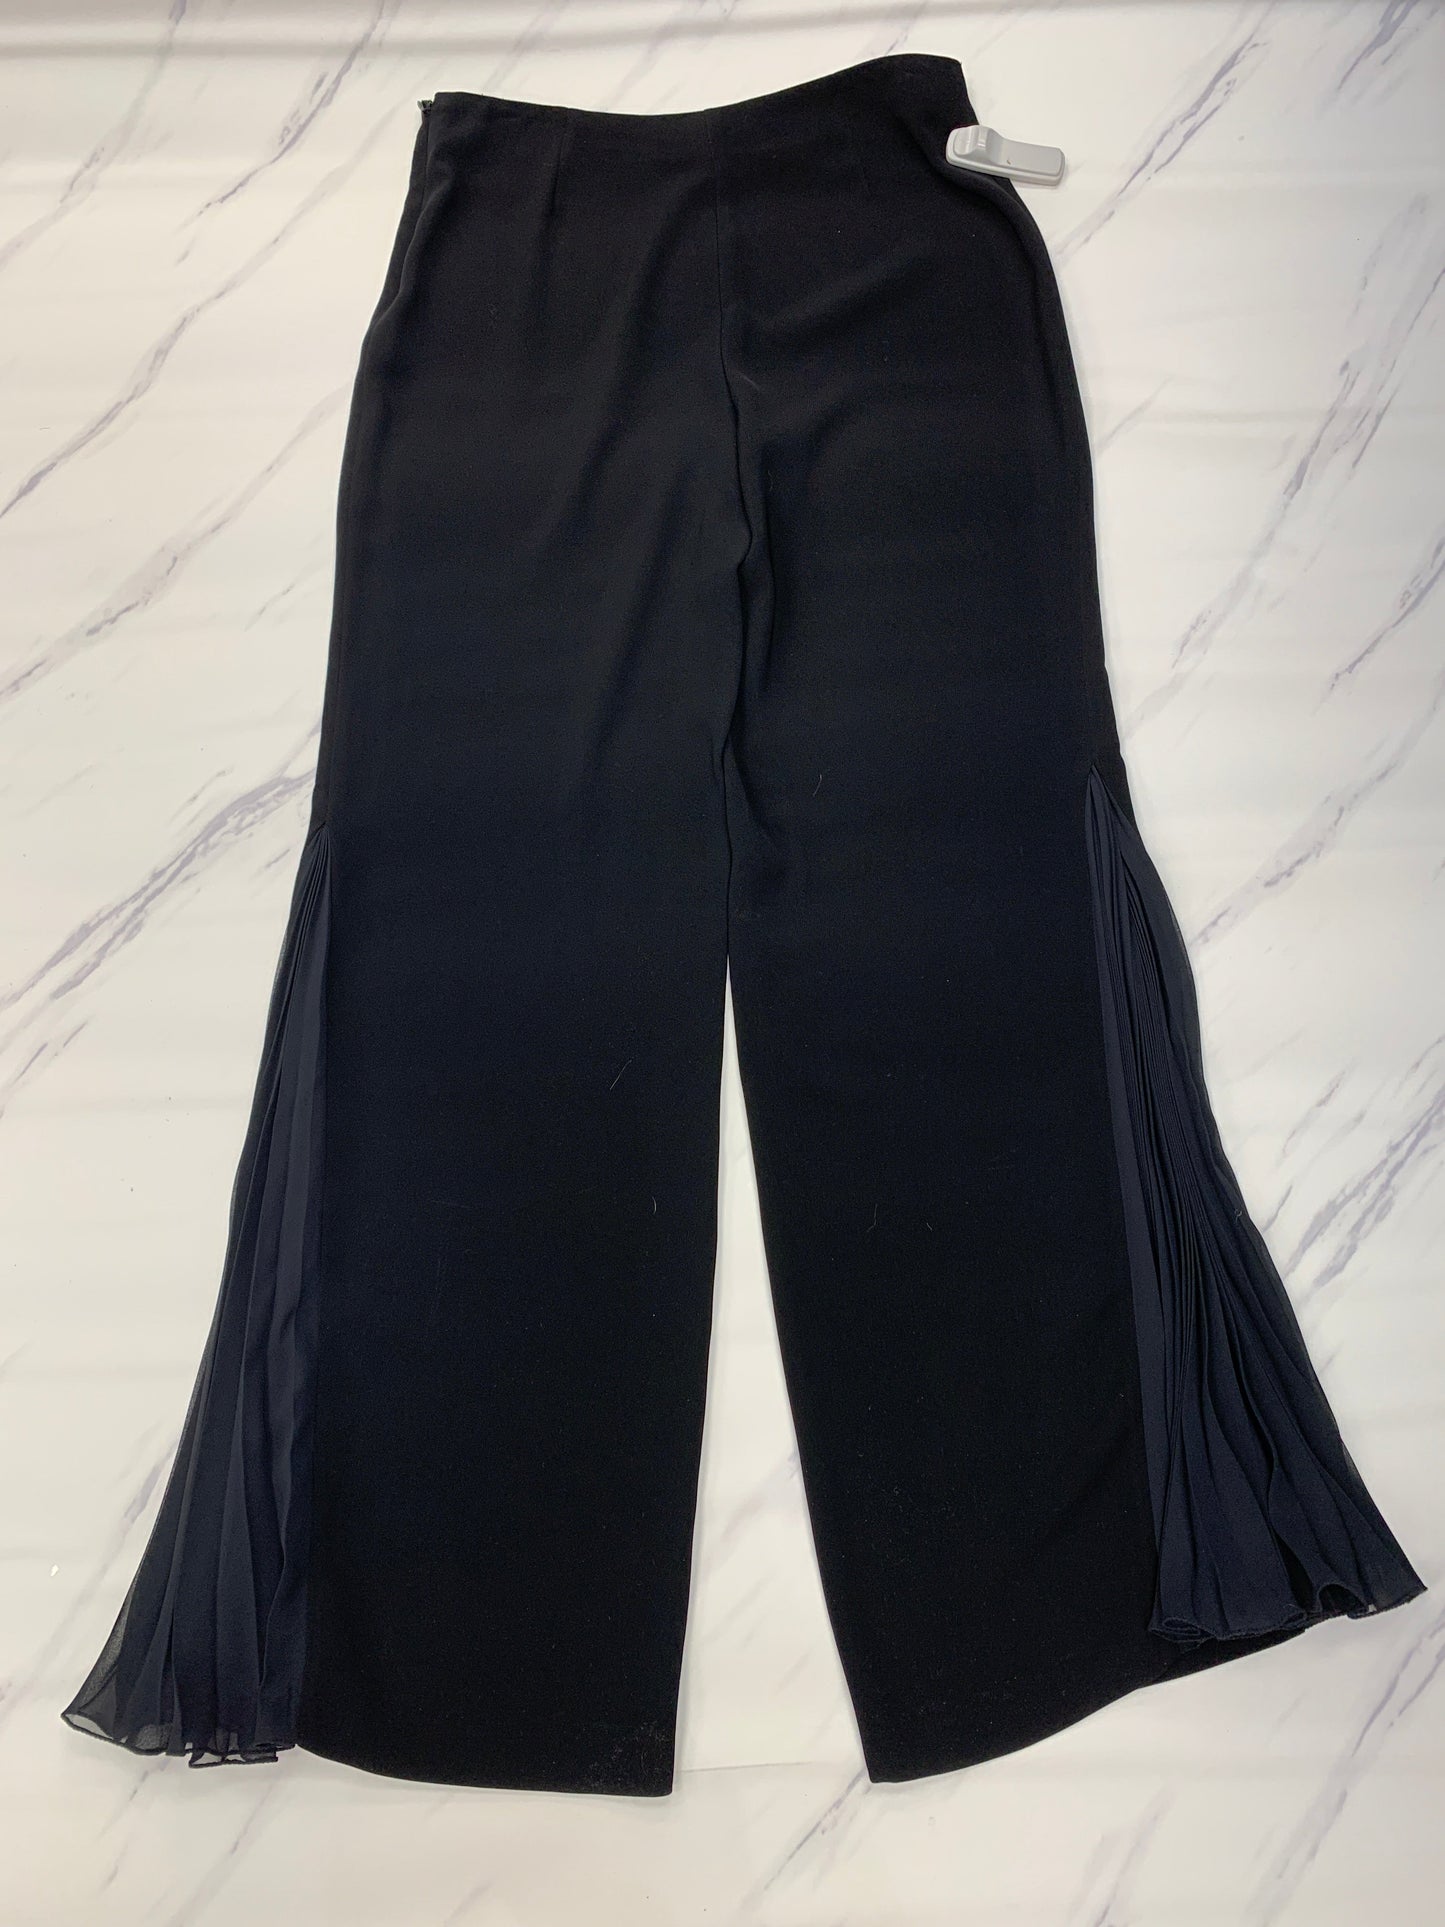 Black Pants Designer Cmb, Size 12